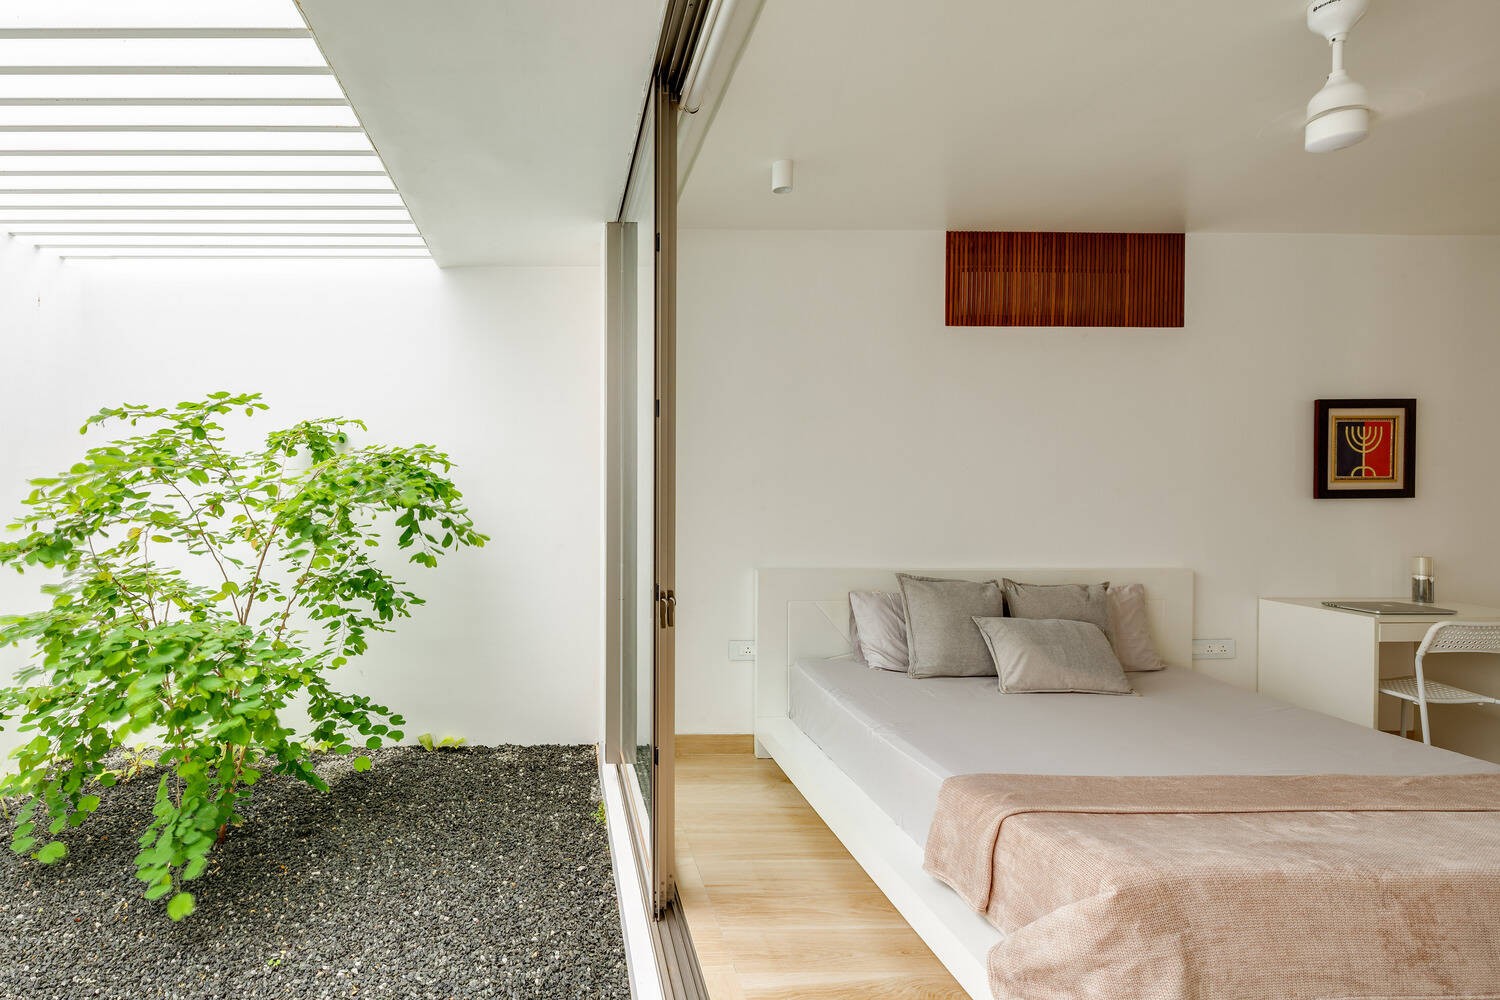 
Phòng ngủ như rộng hơn và hài hòa với thiên nhiên nhờ thiết kế cửa kính cao từ sàn nhà đến trần
